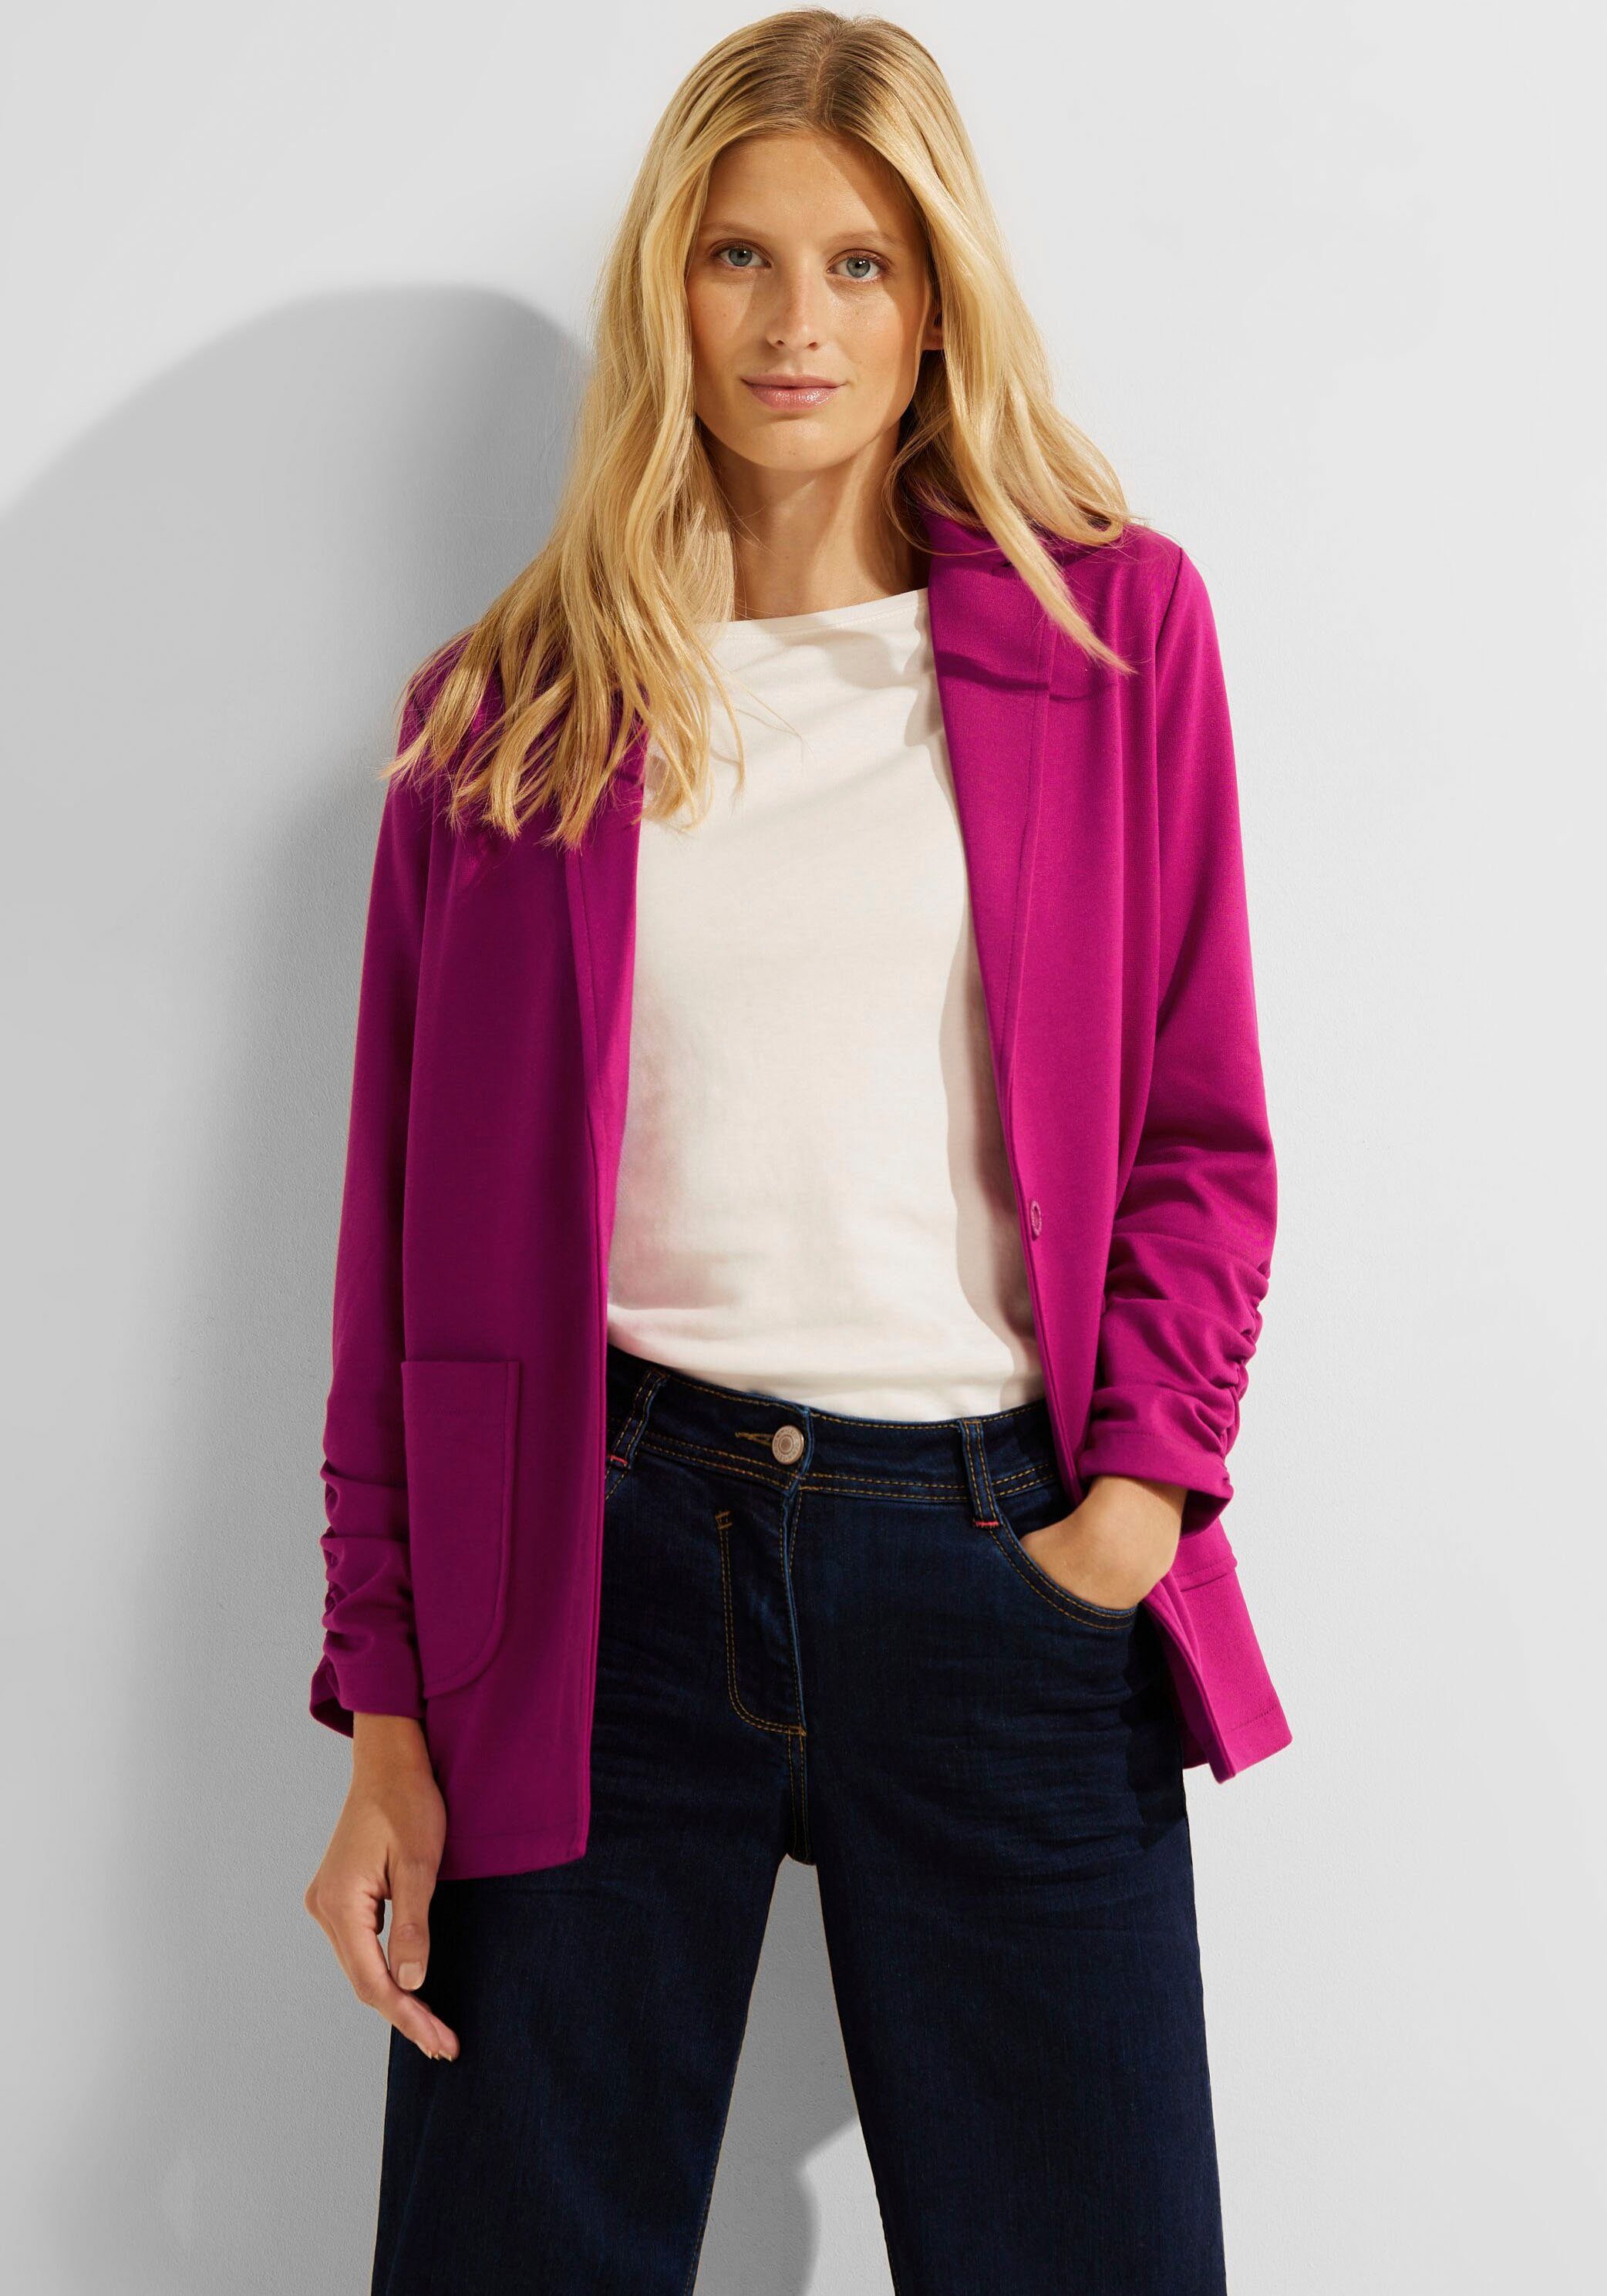 Rosa Cecil Jacken für Damen kaufen » Pinke Cecil Jacken | OTTO | V-Shirts